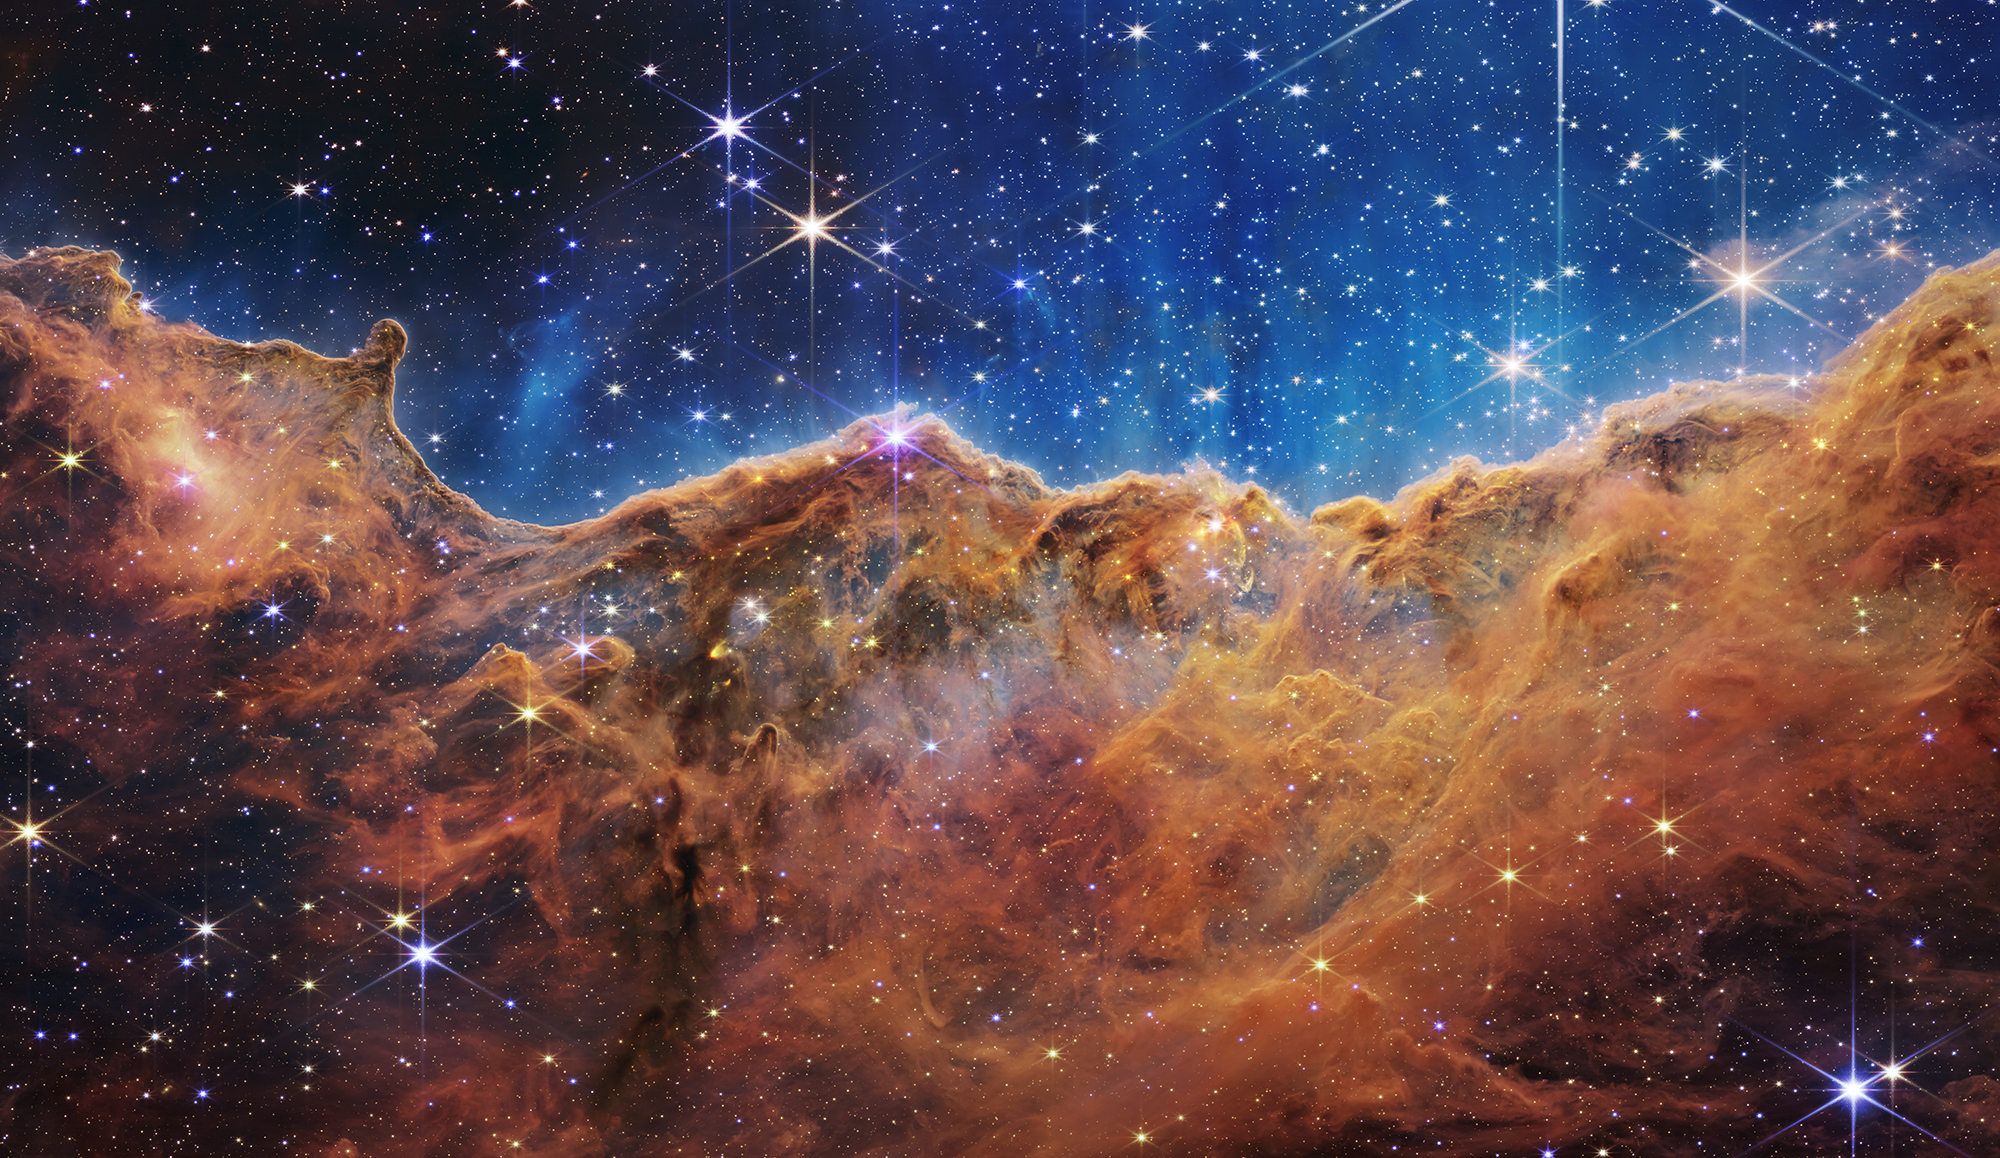 Kính thiên văn James Webb sẽ đưa bạn đến những quan sát chi tiết của những vũ trụ đáng kinh ngạc nhất, những gì không thể thấy bằng mắt thường. Hình ảnh phát ra từ kính thiên văn James Webb sẽ ấn tượng và giúp cho bạn hiểu rõ hơn về vũ trụ.